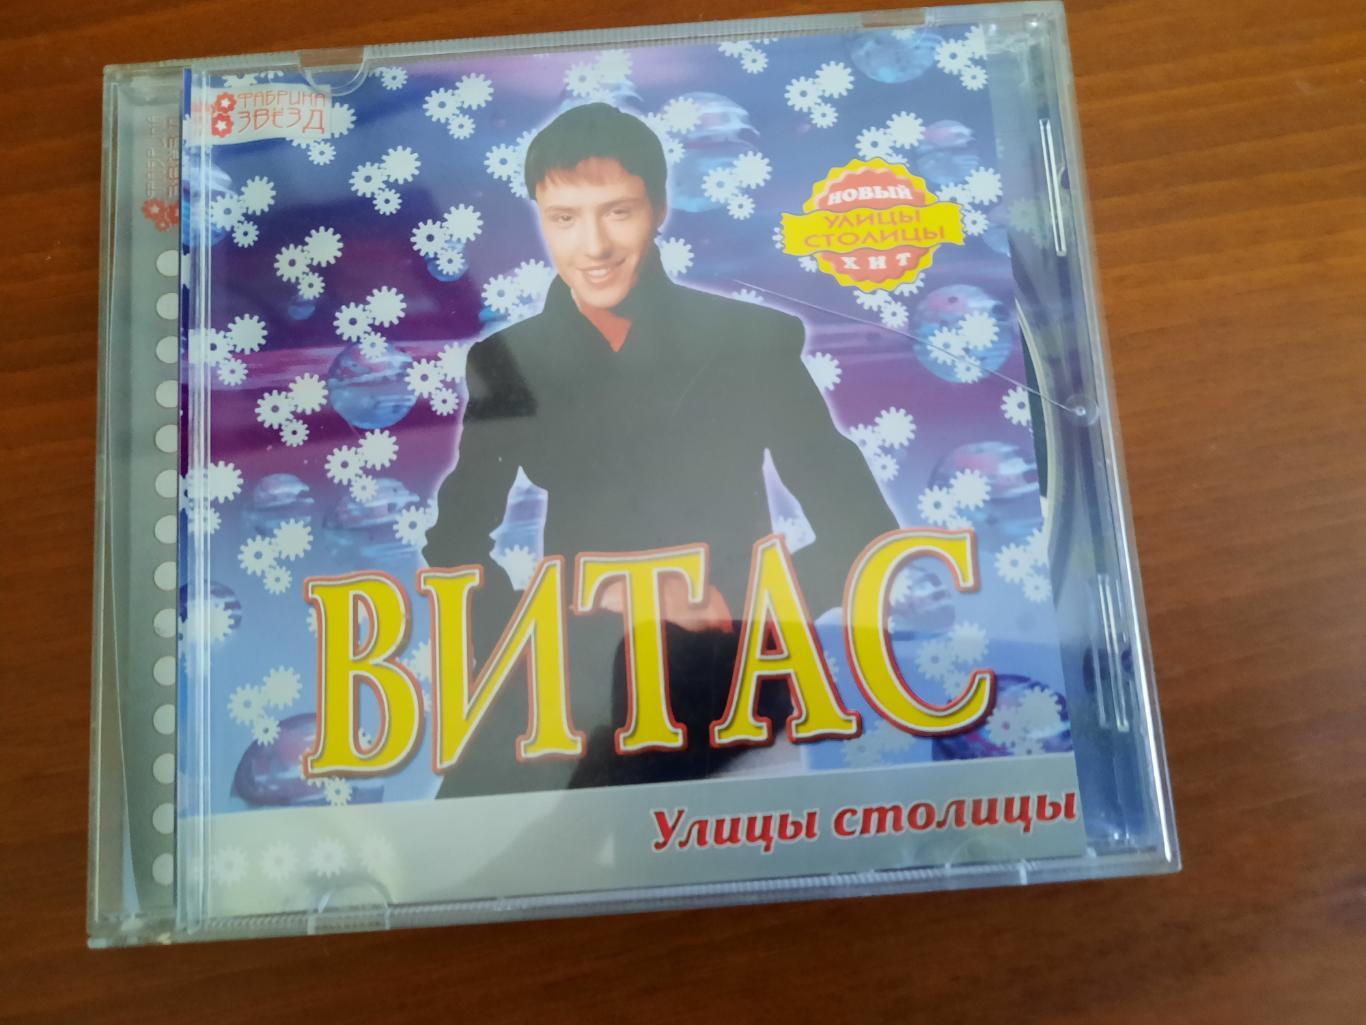 CD-диск Витас. Улицы столицы